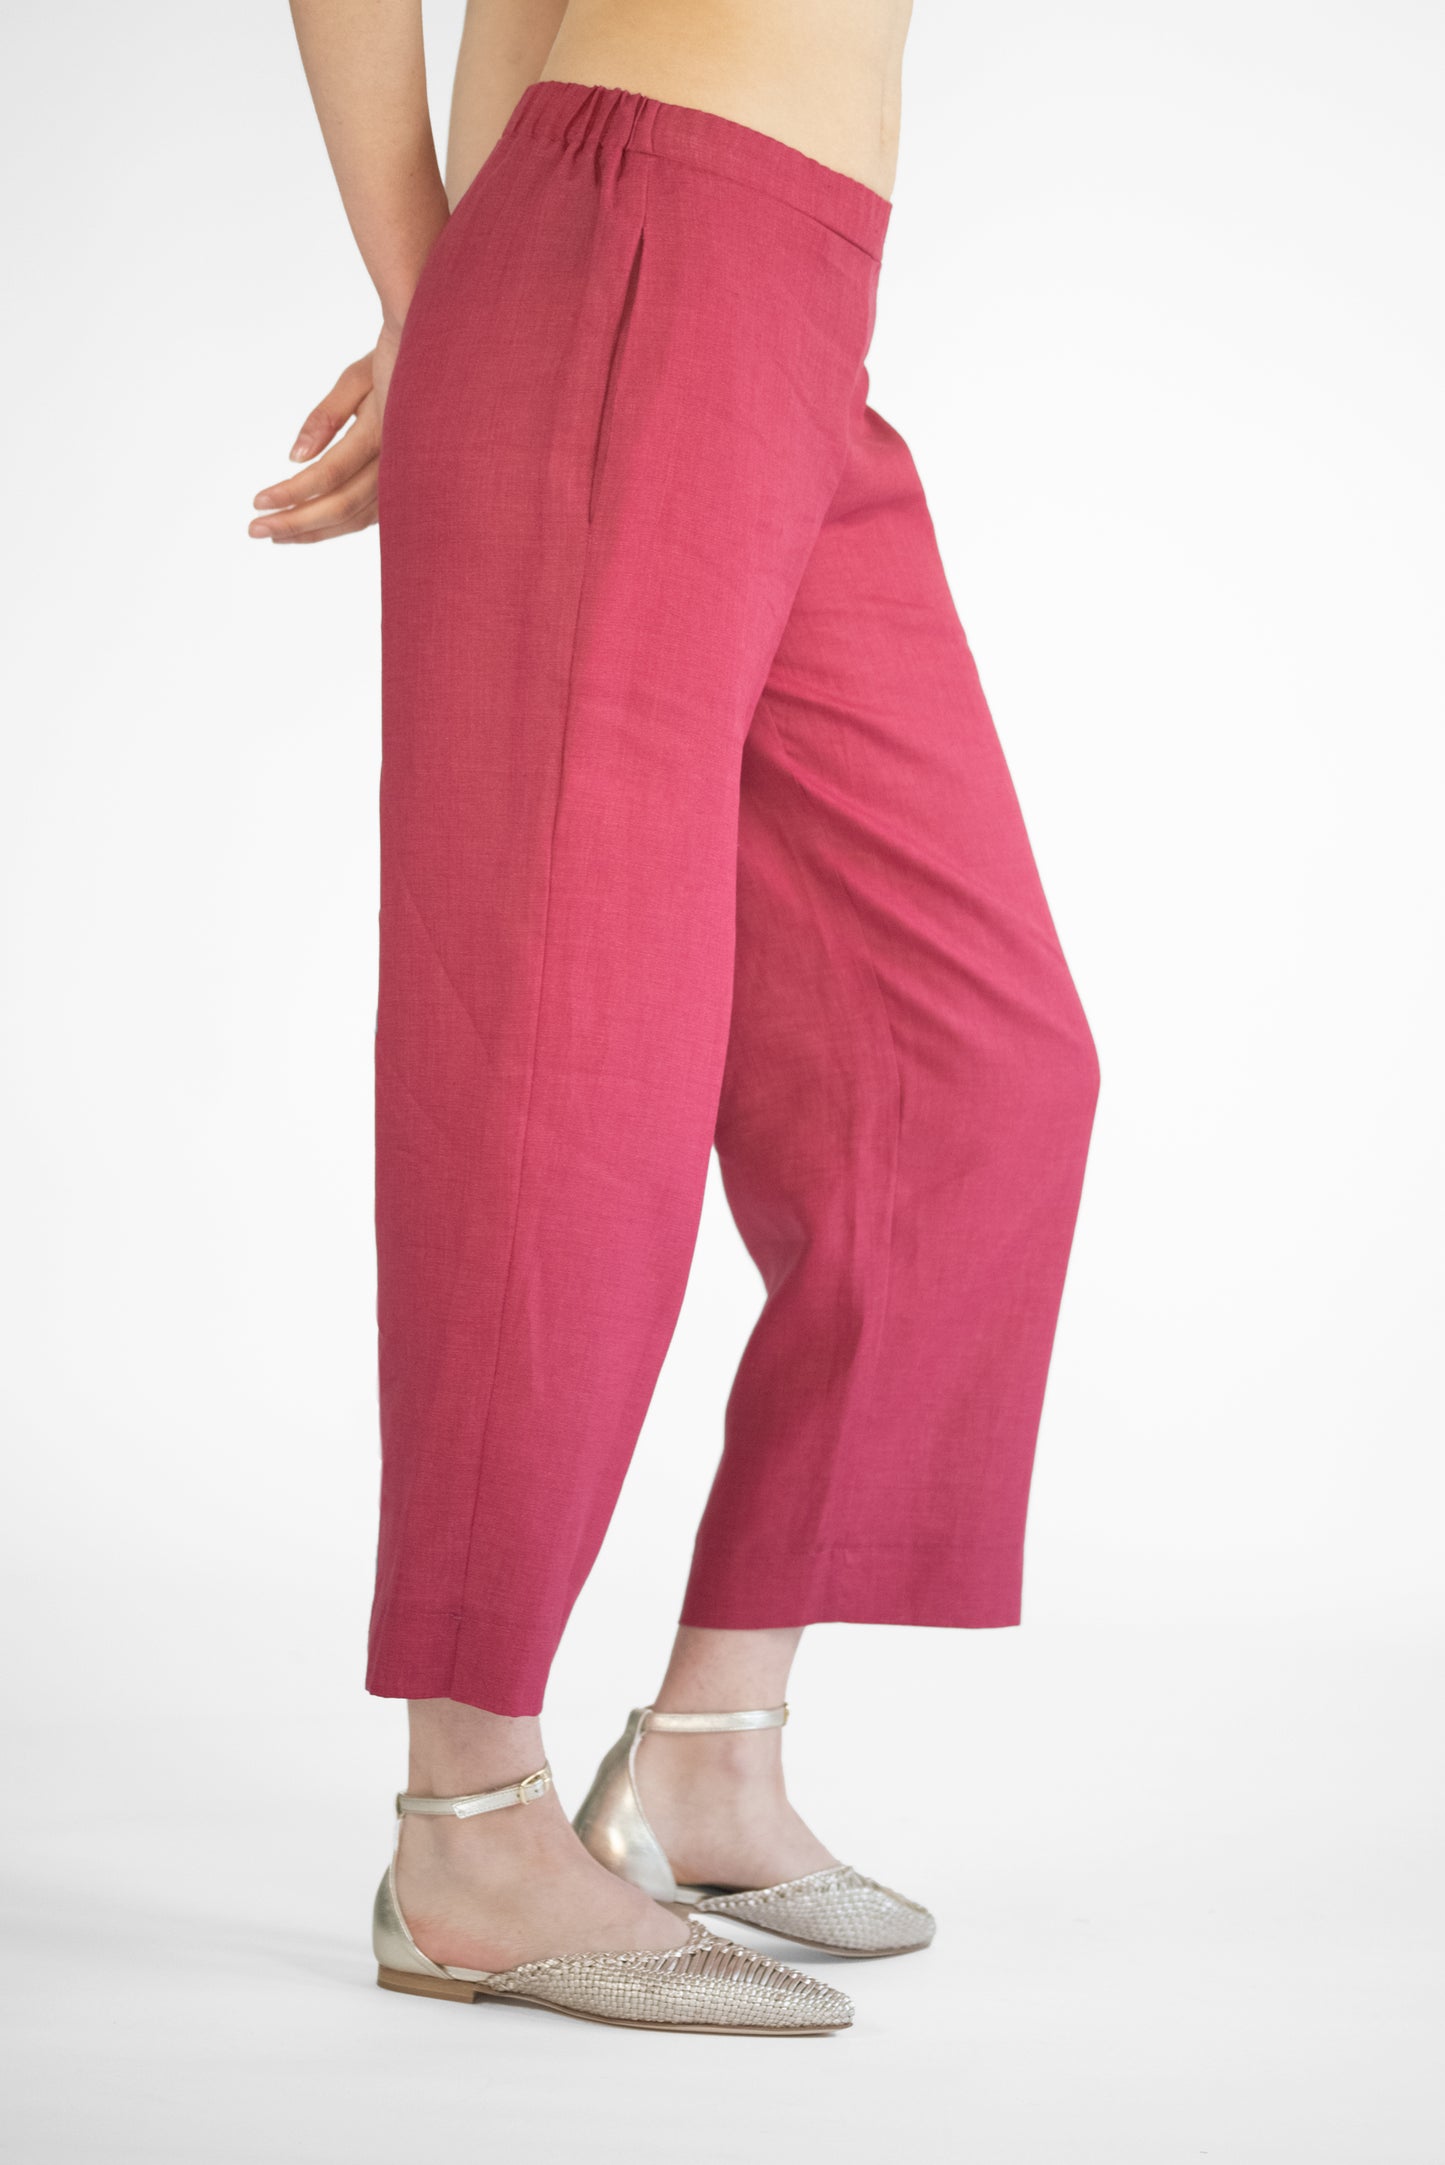 Pantalone culotte in lino  tinto filo